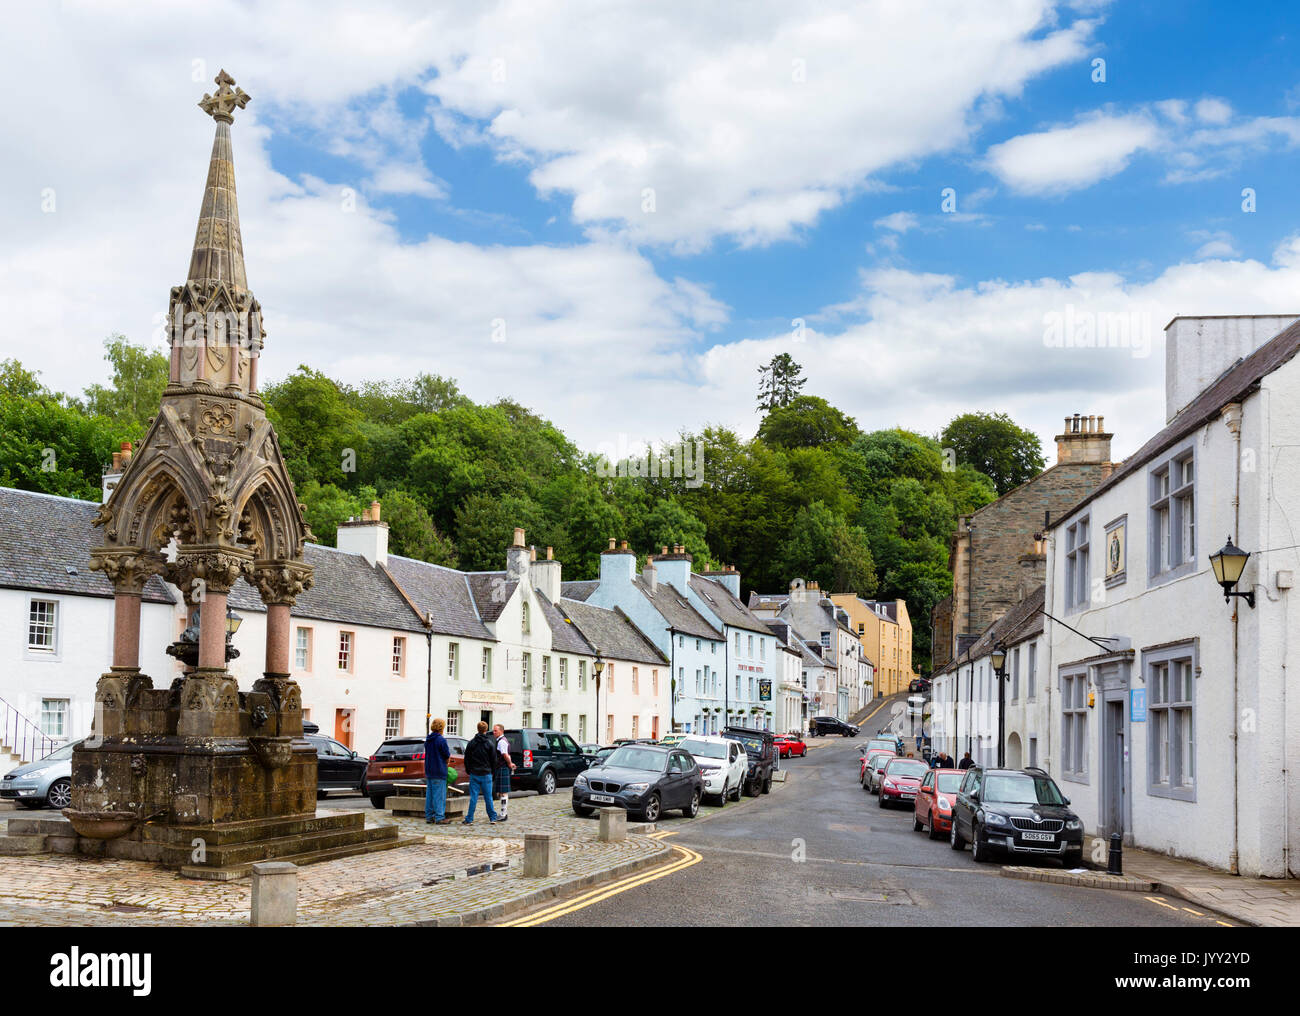 La High Street con la Atholl Memorial fontana a sinistra, Dunkeld, Perth and Kinross, Scotland, Regno Unito Foto Stock